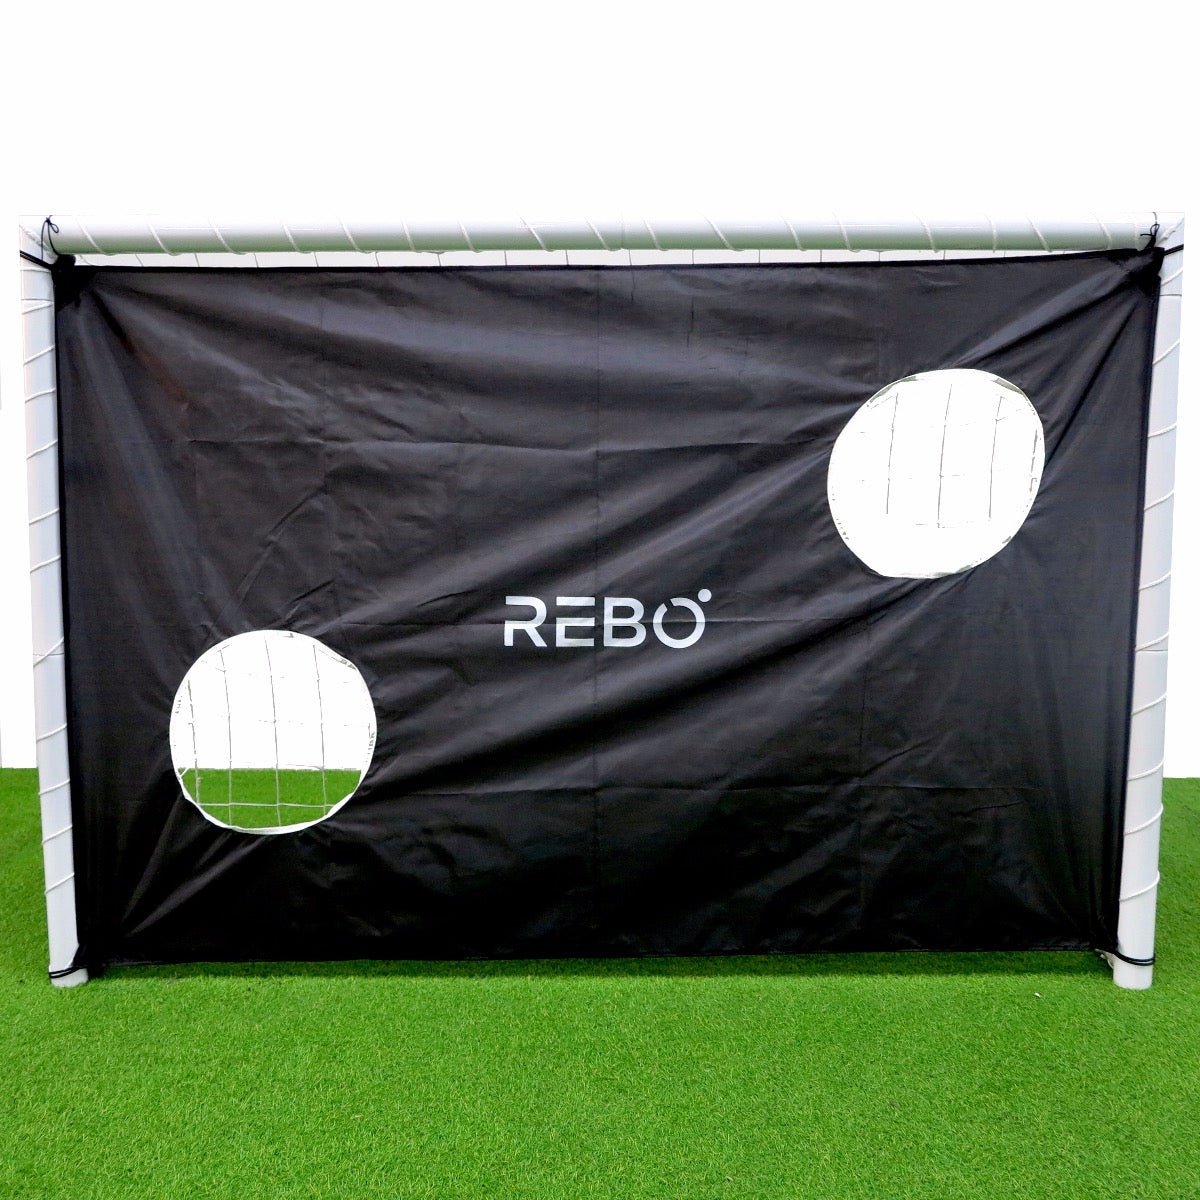 Rebo Steel Football Goal Target Sheet - 6 x 4FT Target